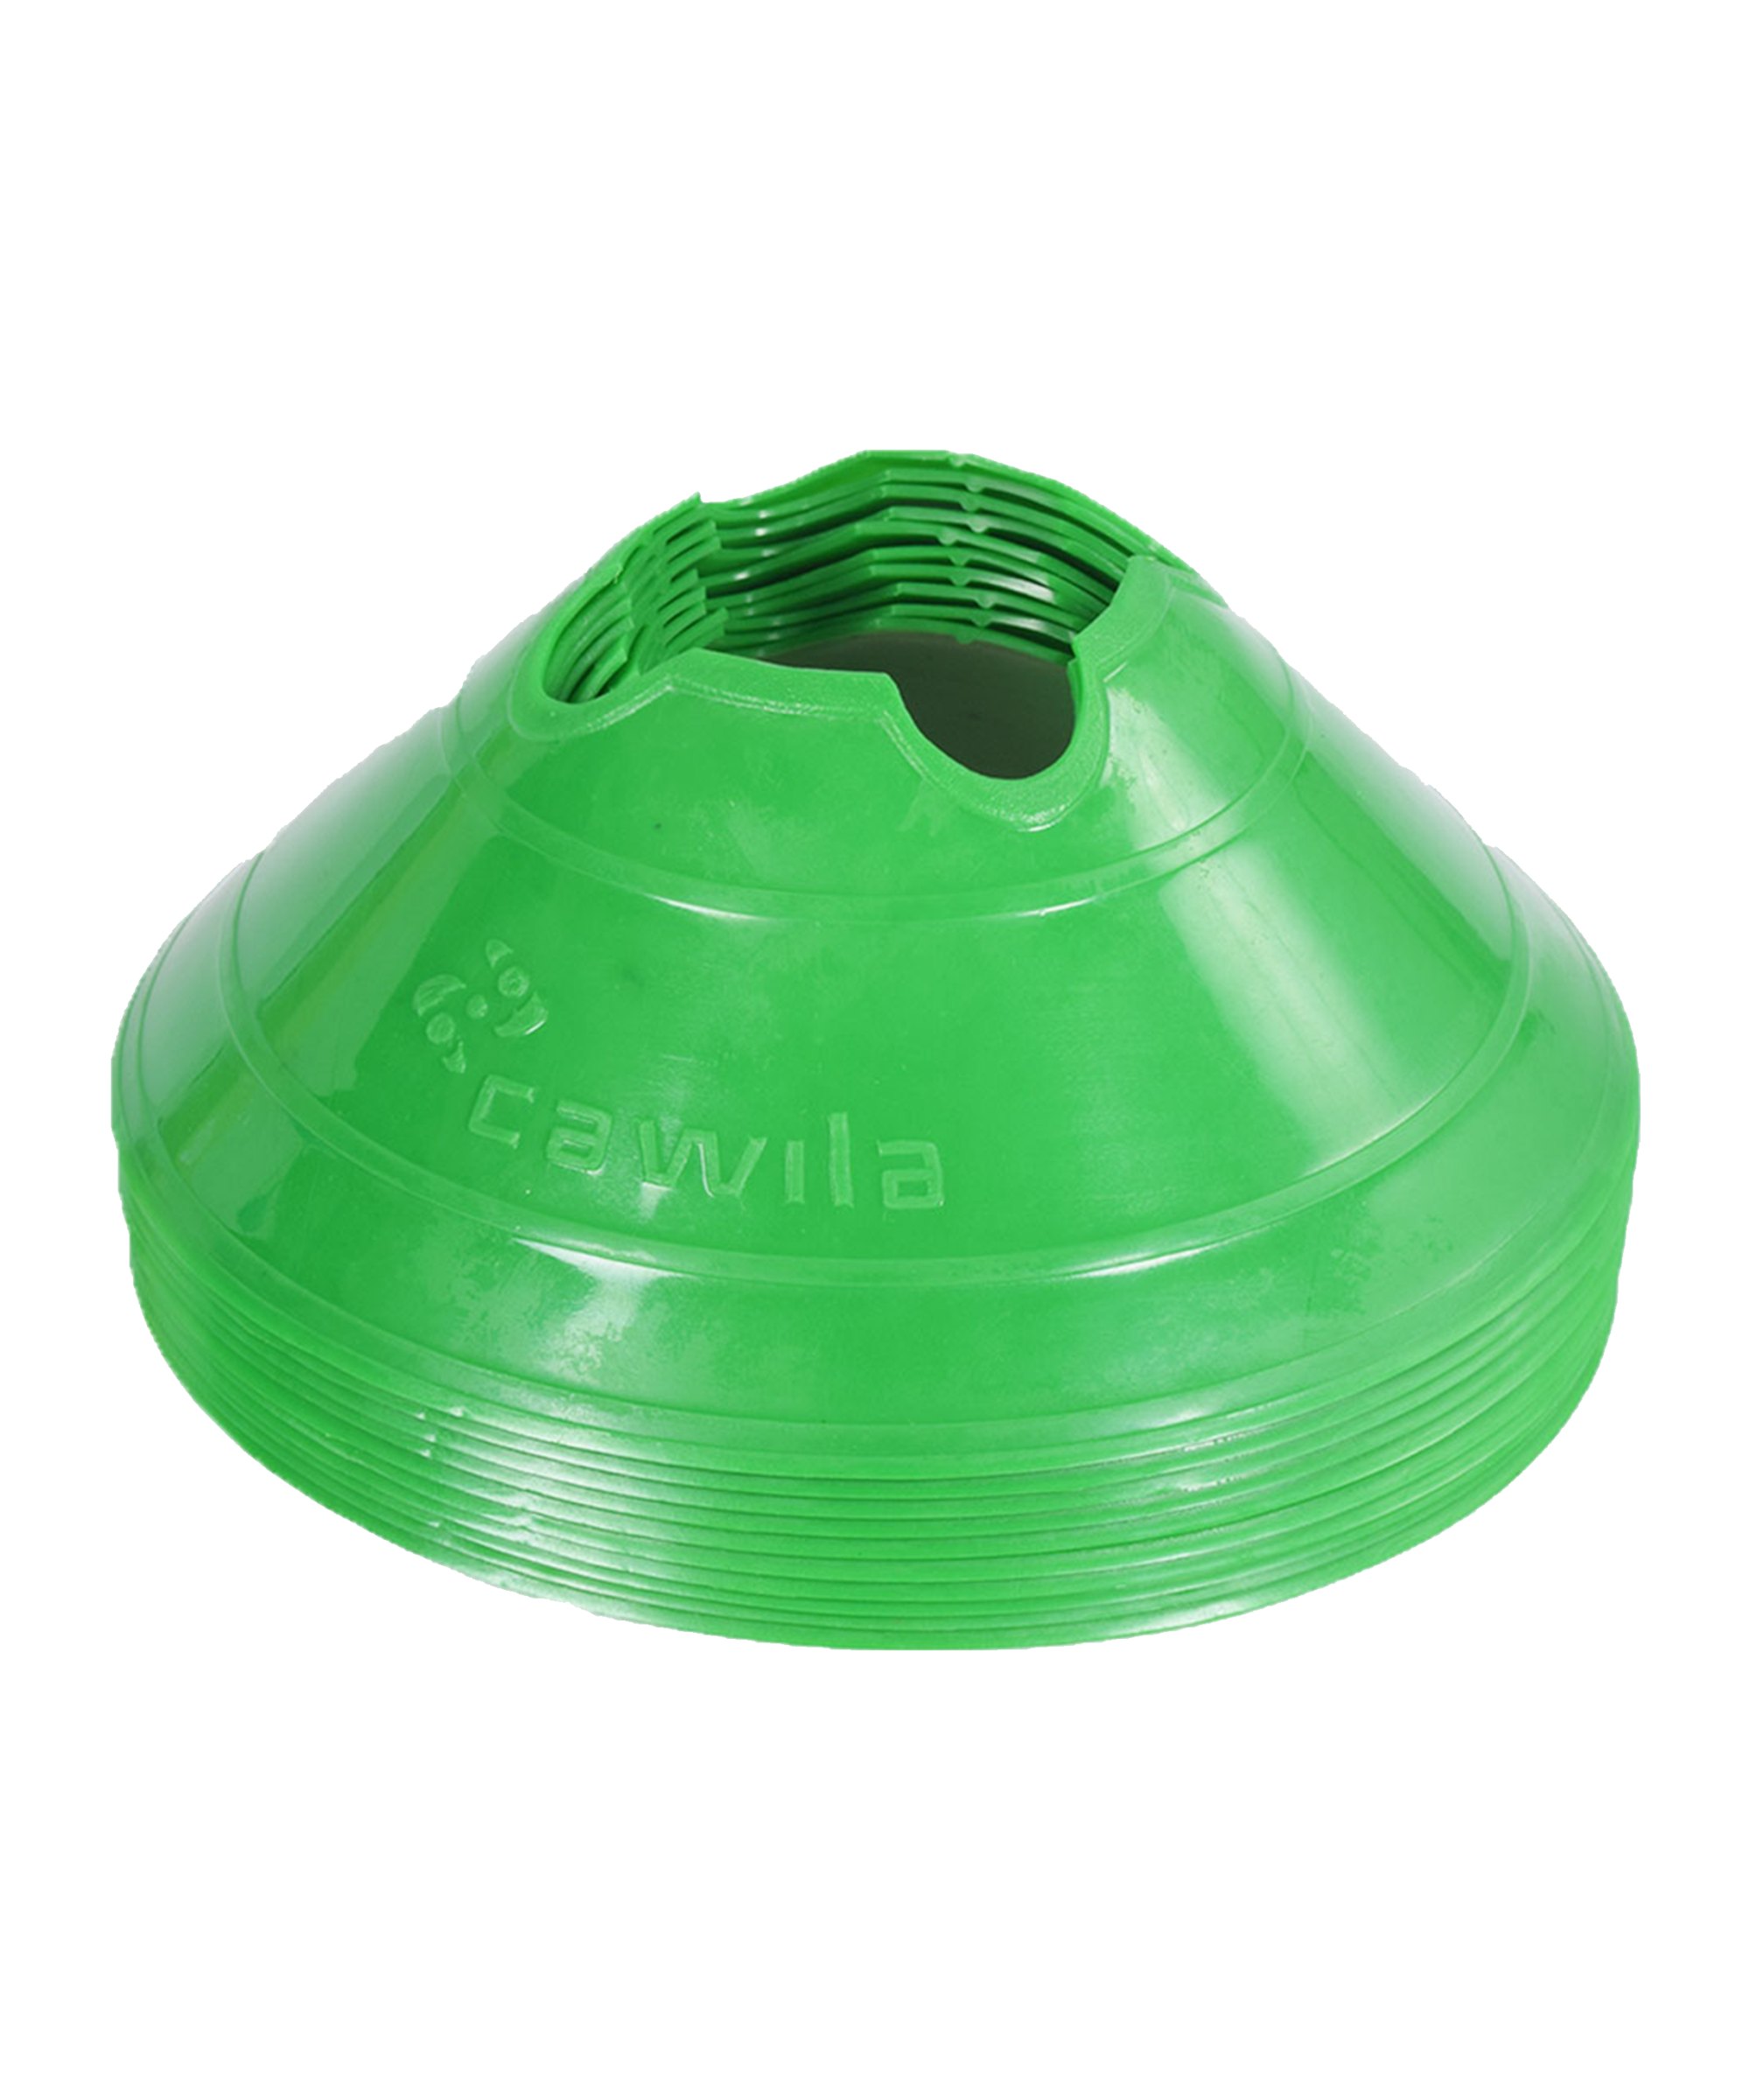 Cawila Markierungshauben M | 10er Set | Durchmesser 20cm, Höhe 6cm | grün - gruen